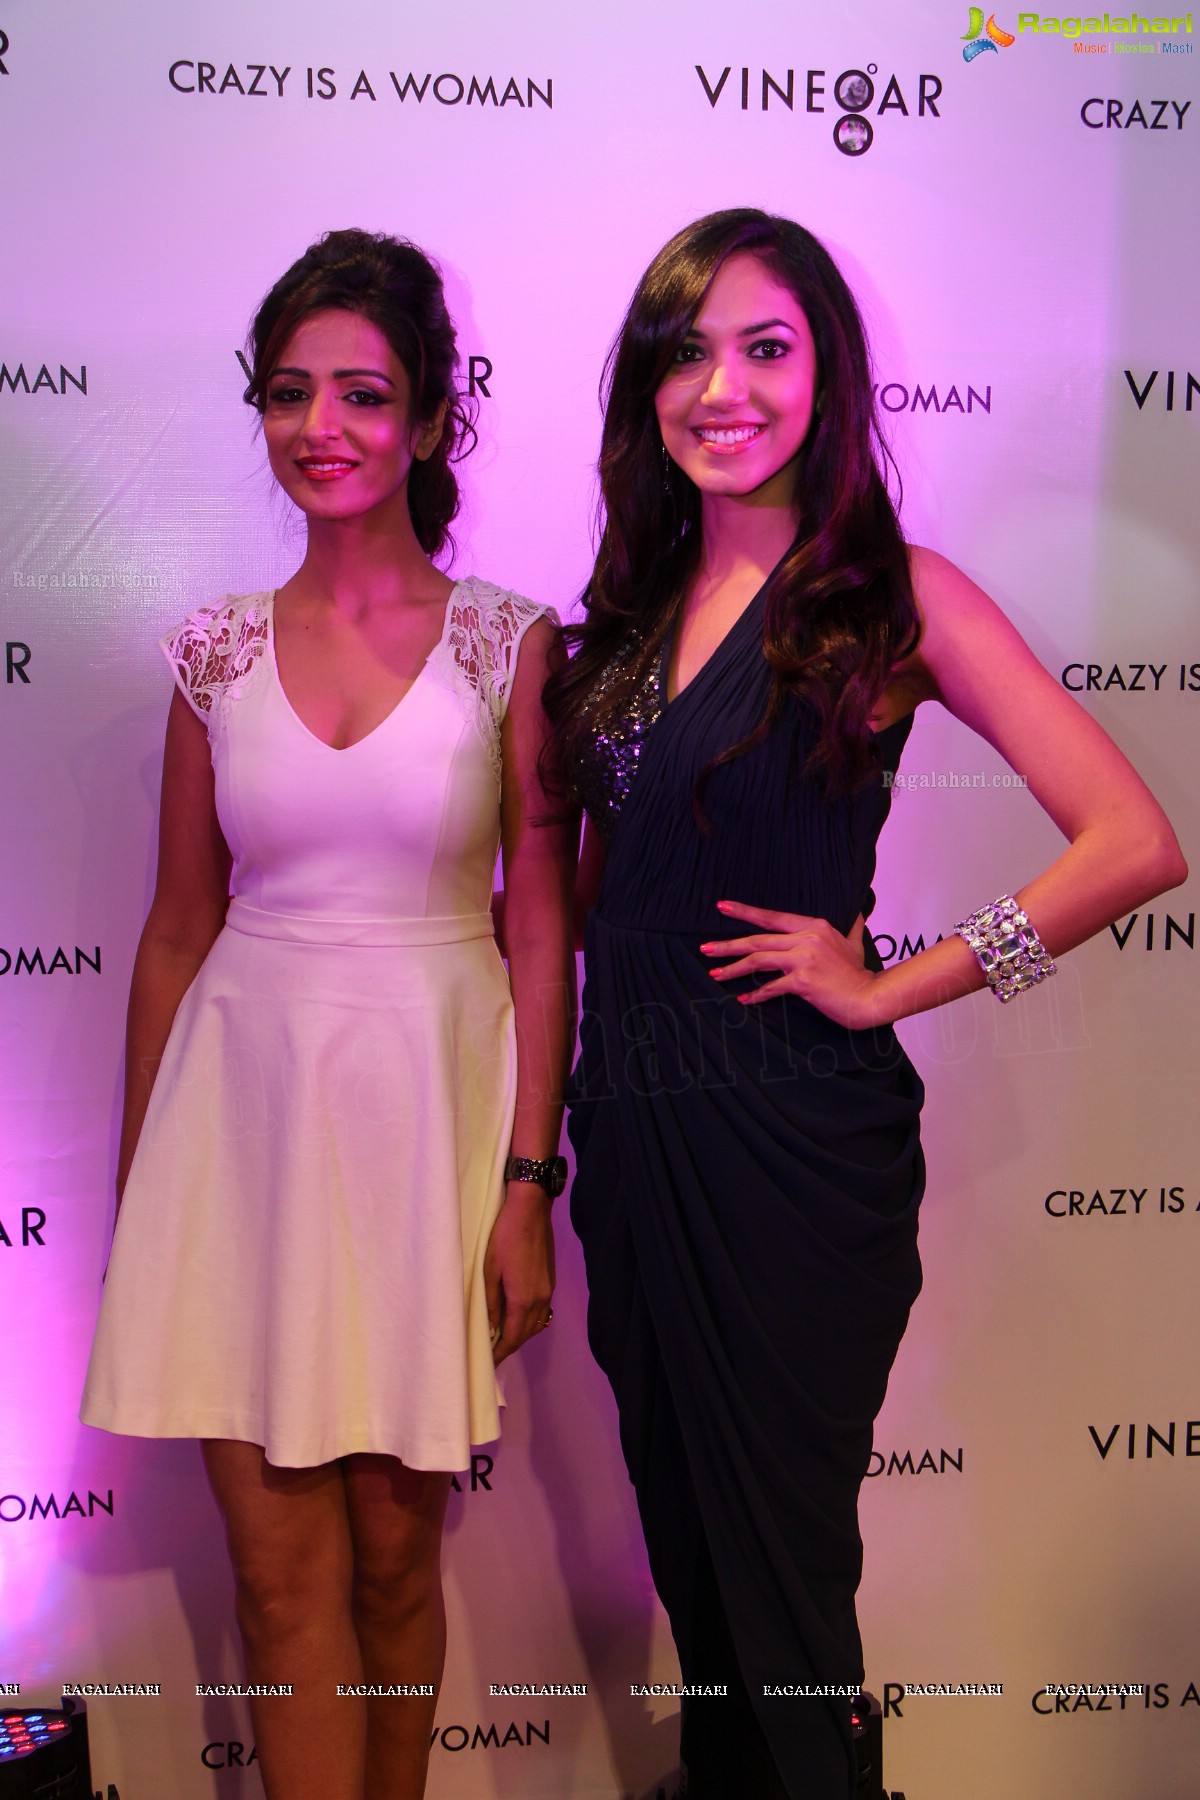 Kangana Ranaut launches Vinegar-The Spanish Fashion Brand in Hyderabad